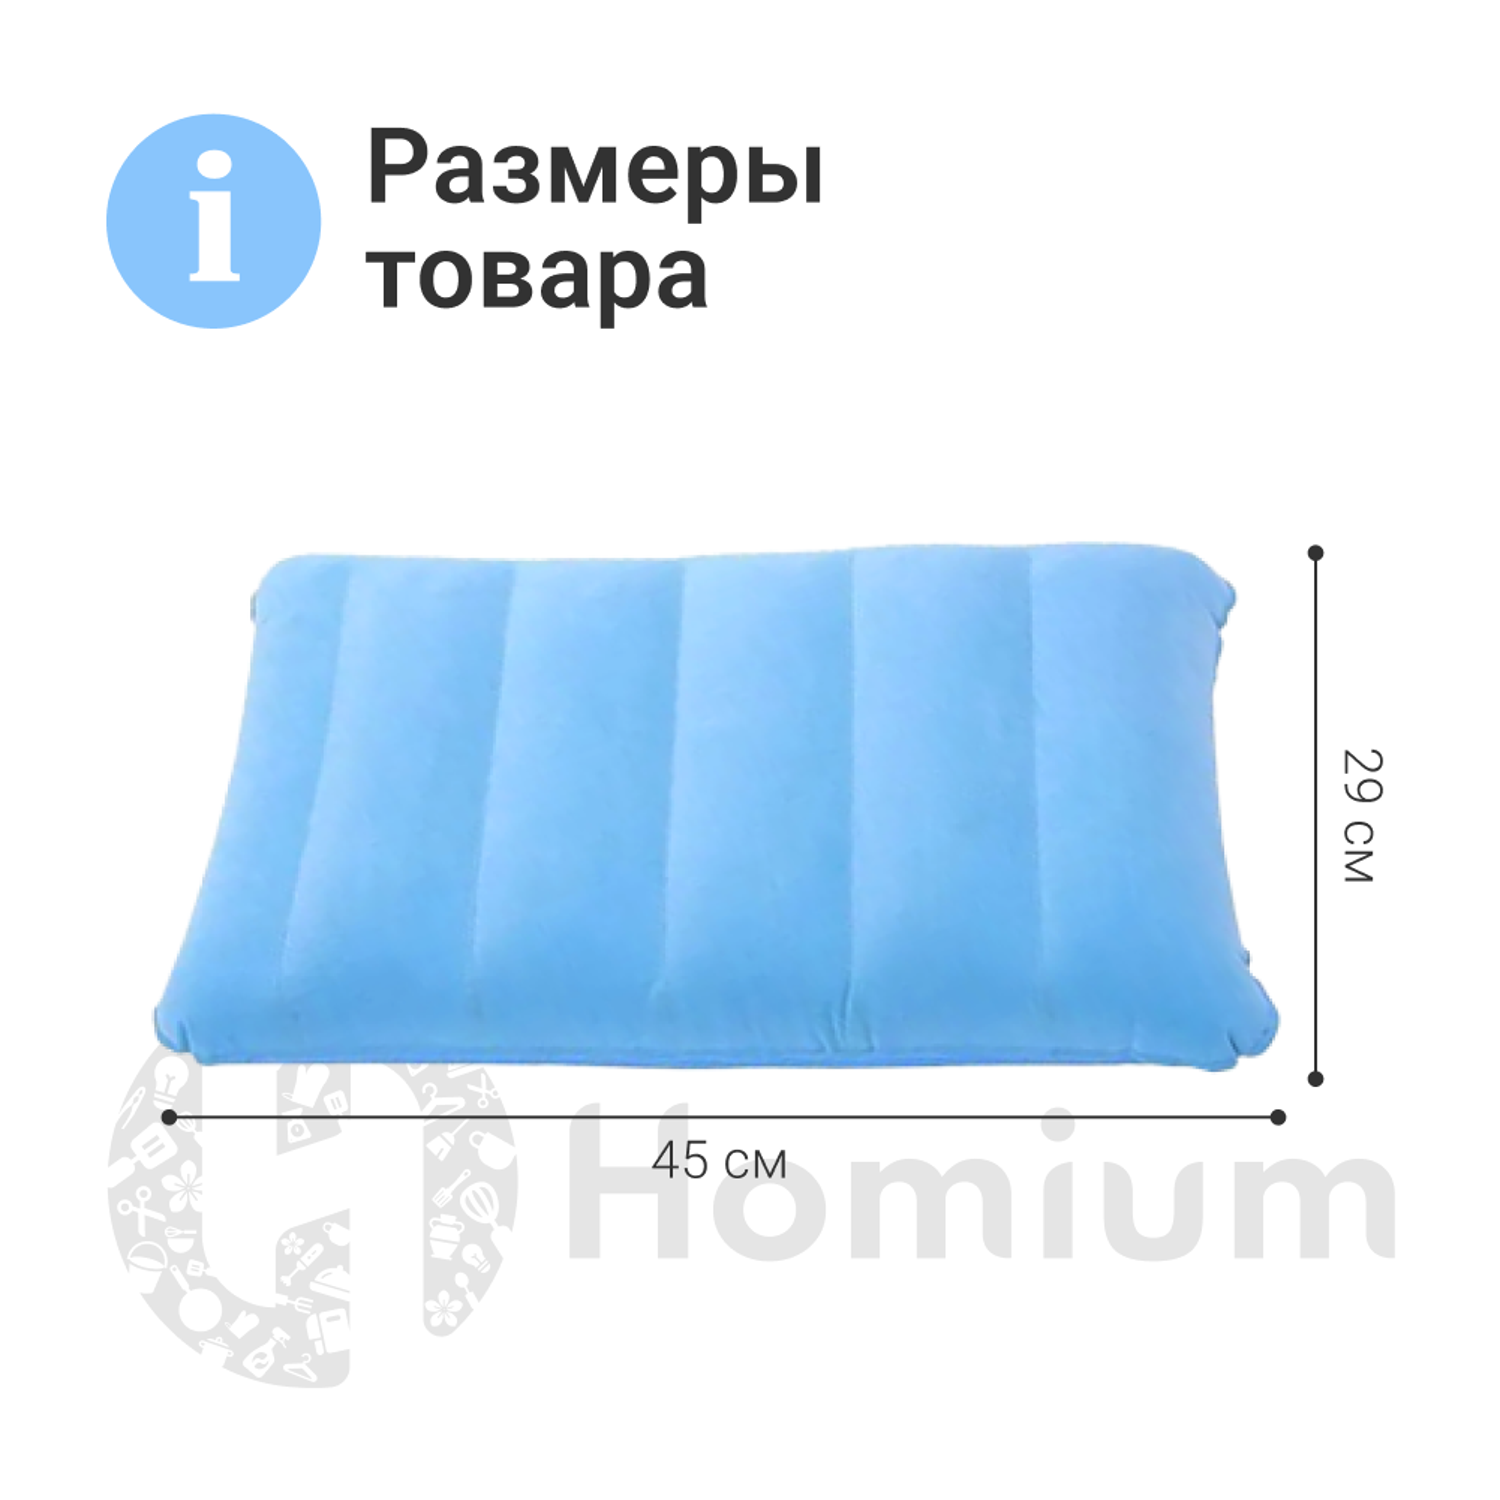 Подушка надувная ZDK Homium Travel Comfort дорожная цвет голубой - фото 8